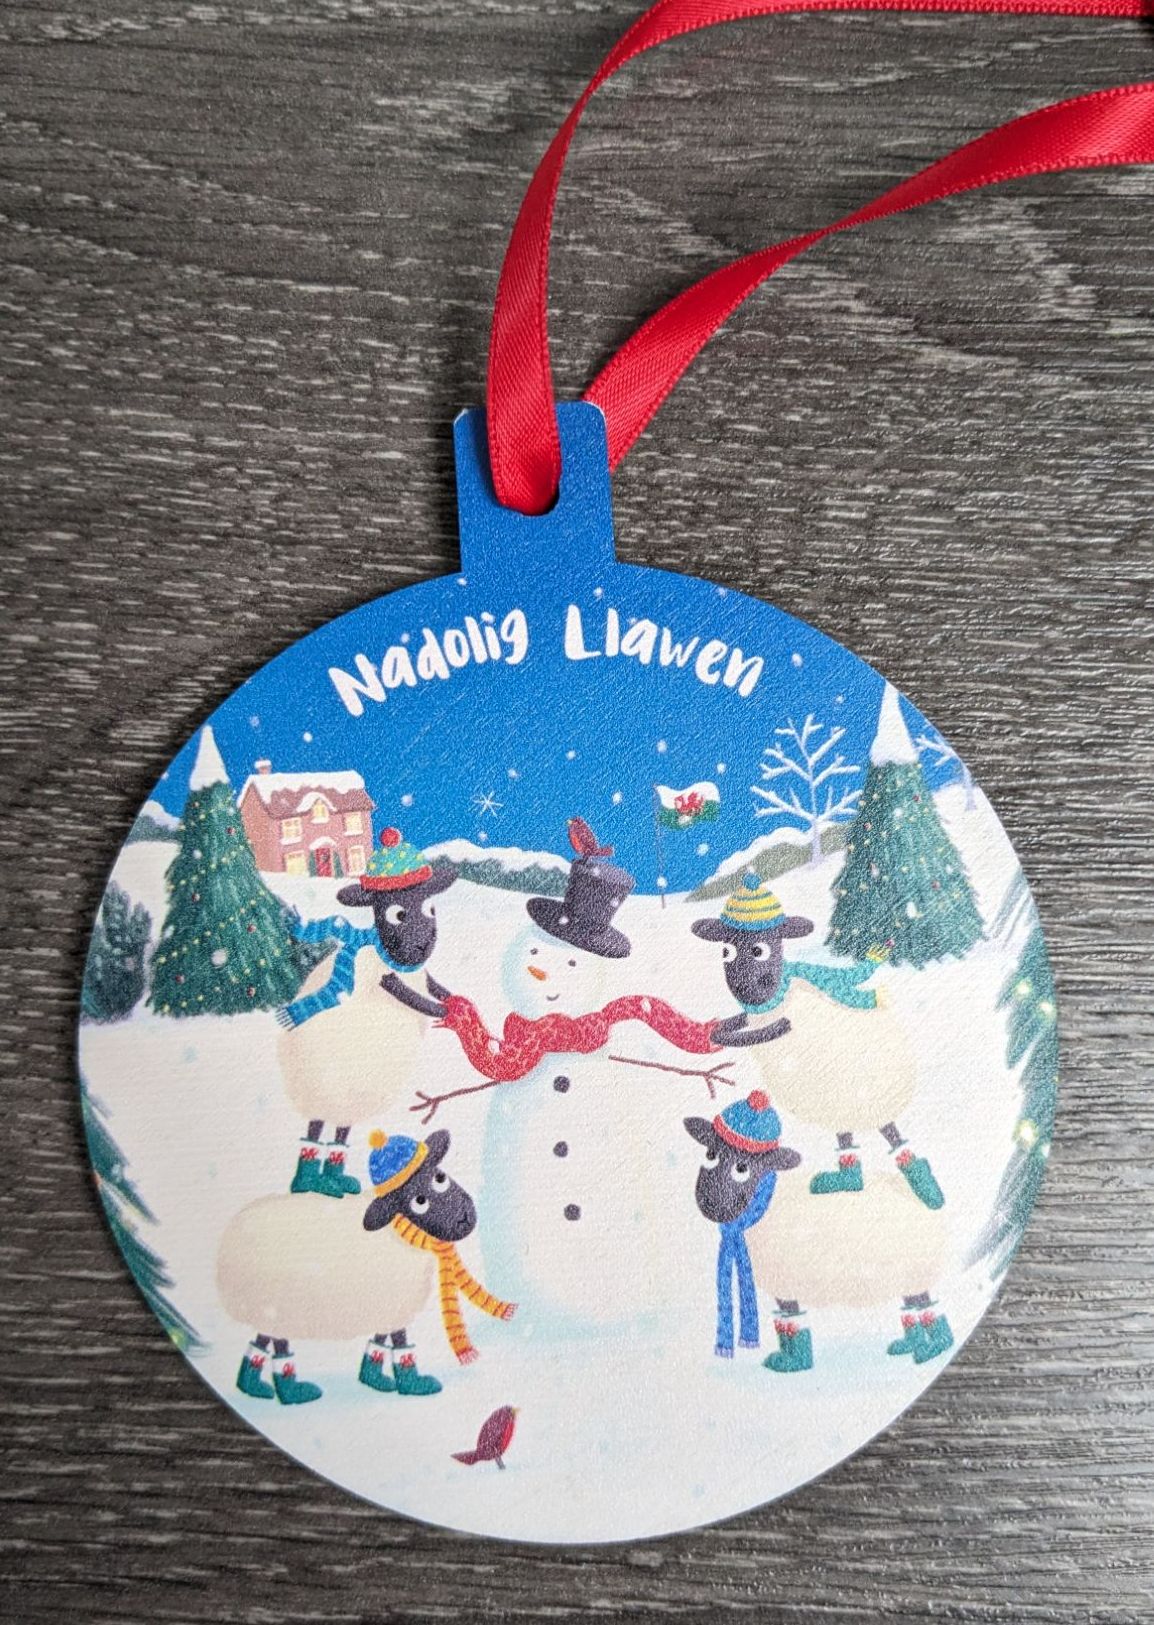 Nadolig Llawen Decoration - Snowman